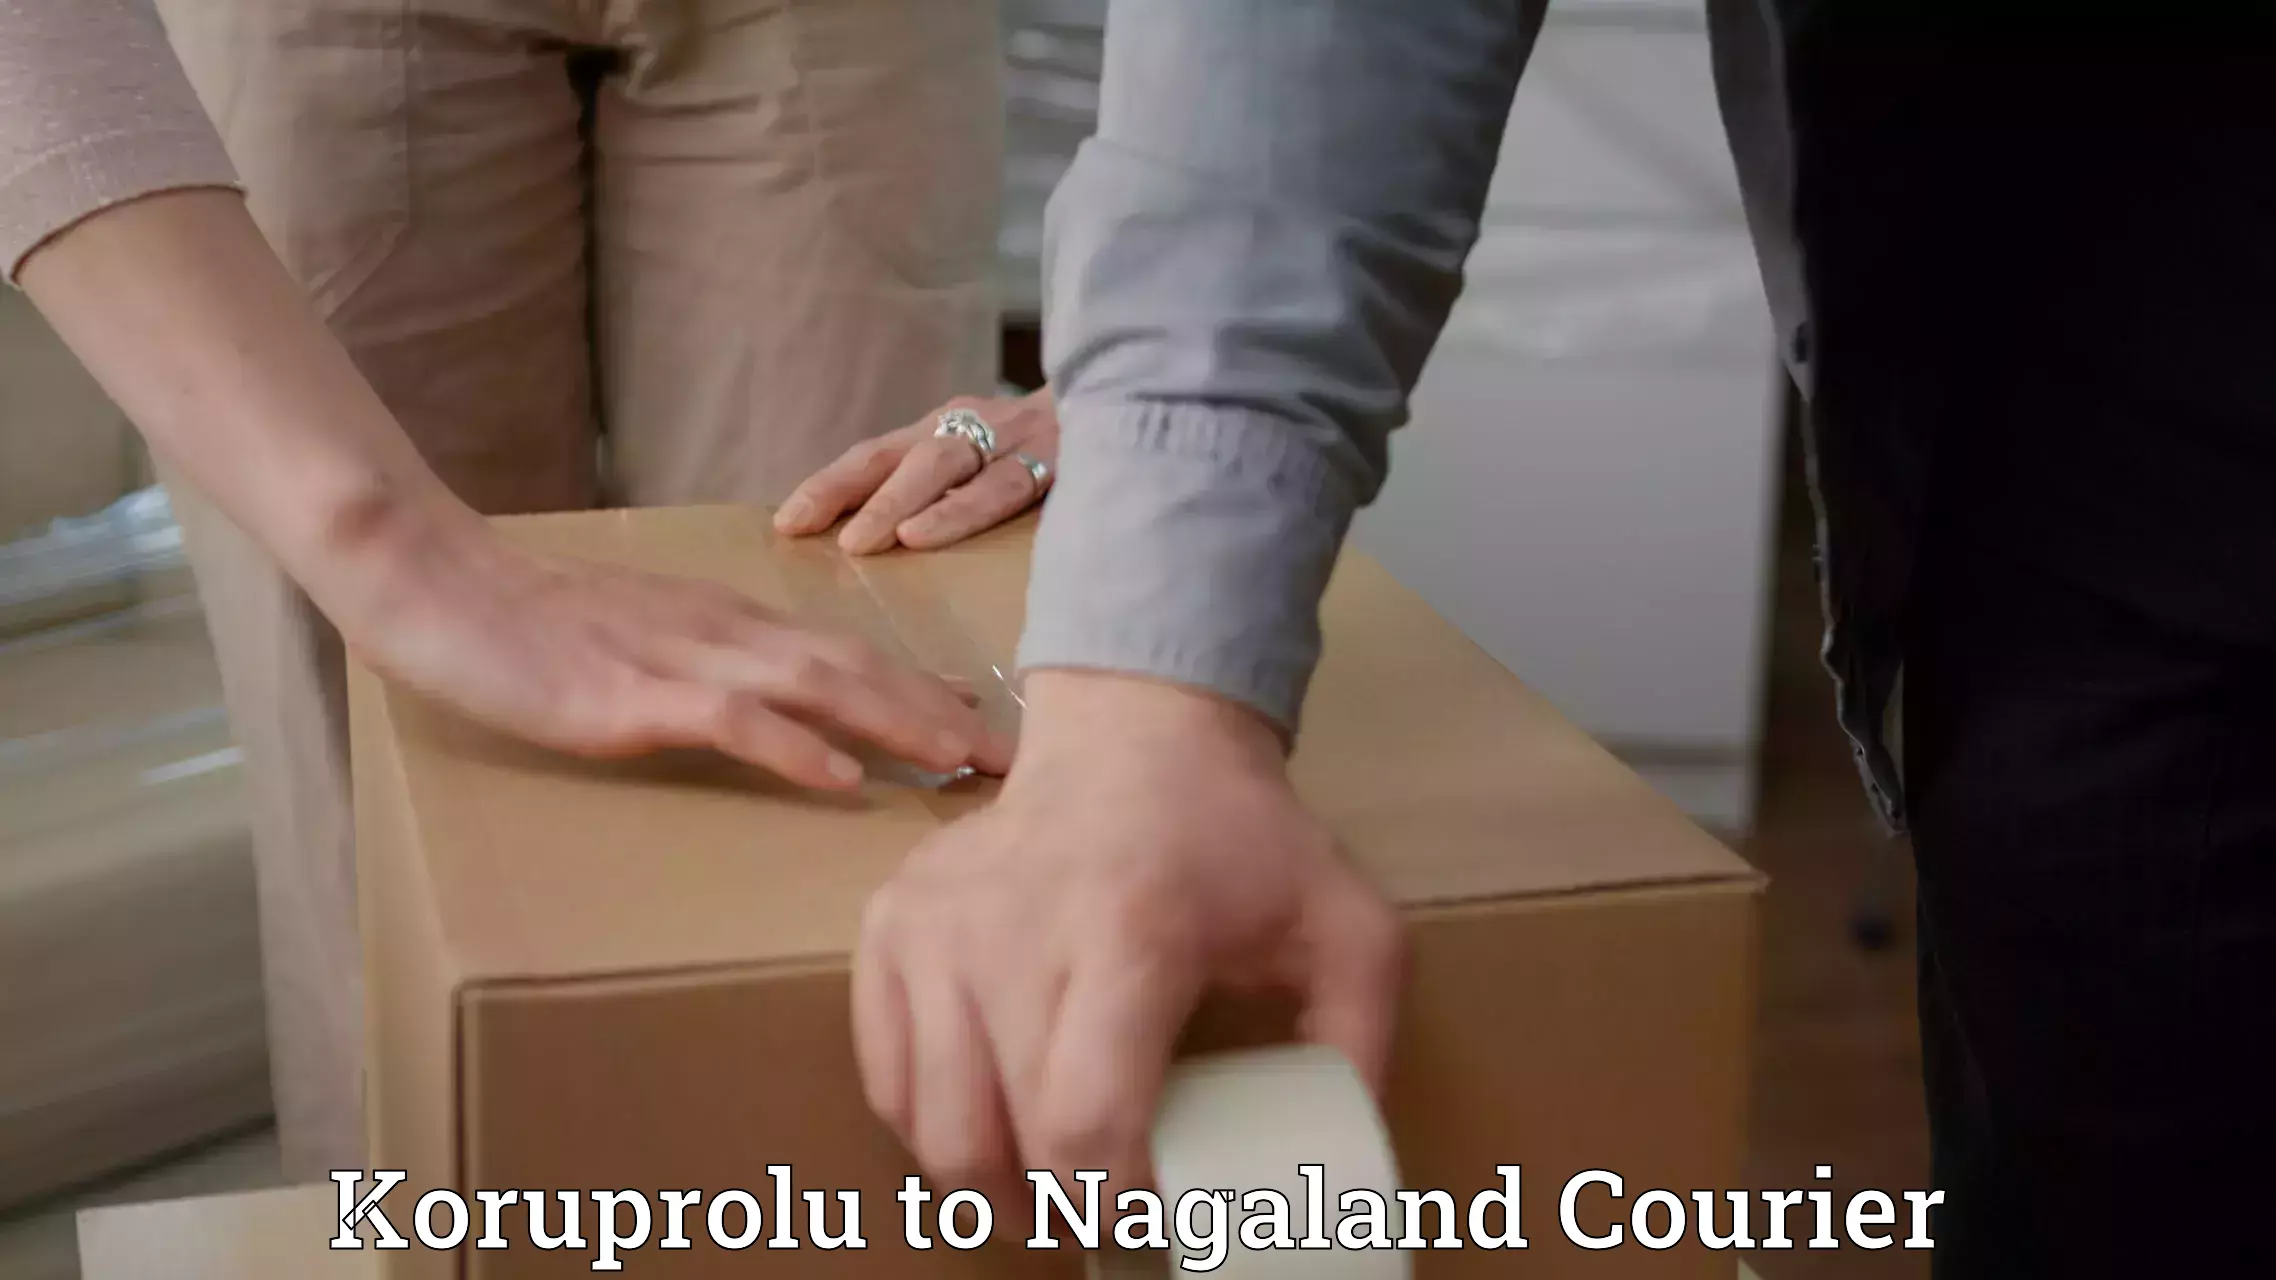 Express mail service Koruprolu to NIT Nagaland